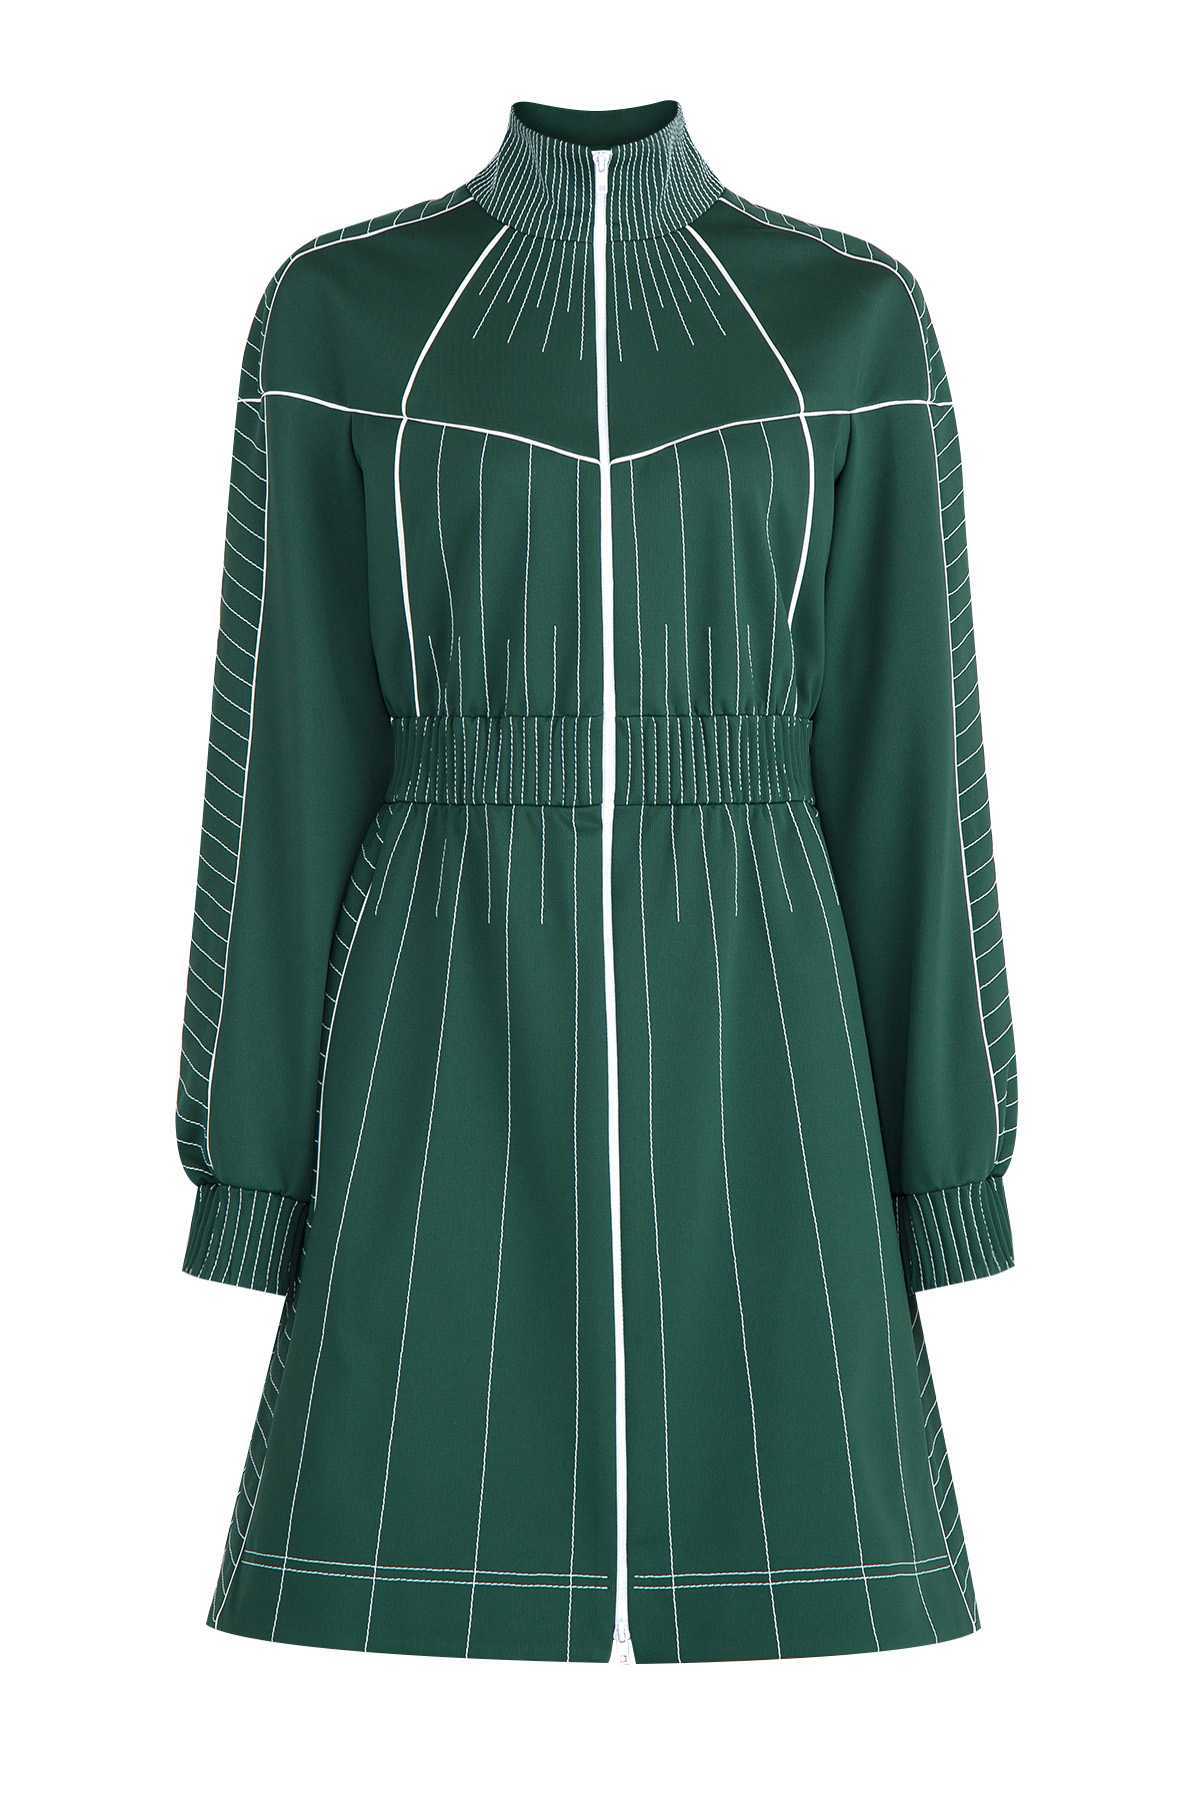 Платье А-силуэта с контрастной прострочкой швов и высоким воротом VALENTINO, цвет зеленый, размер 42 - фото 1